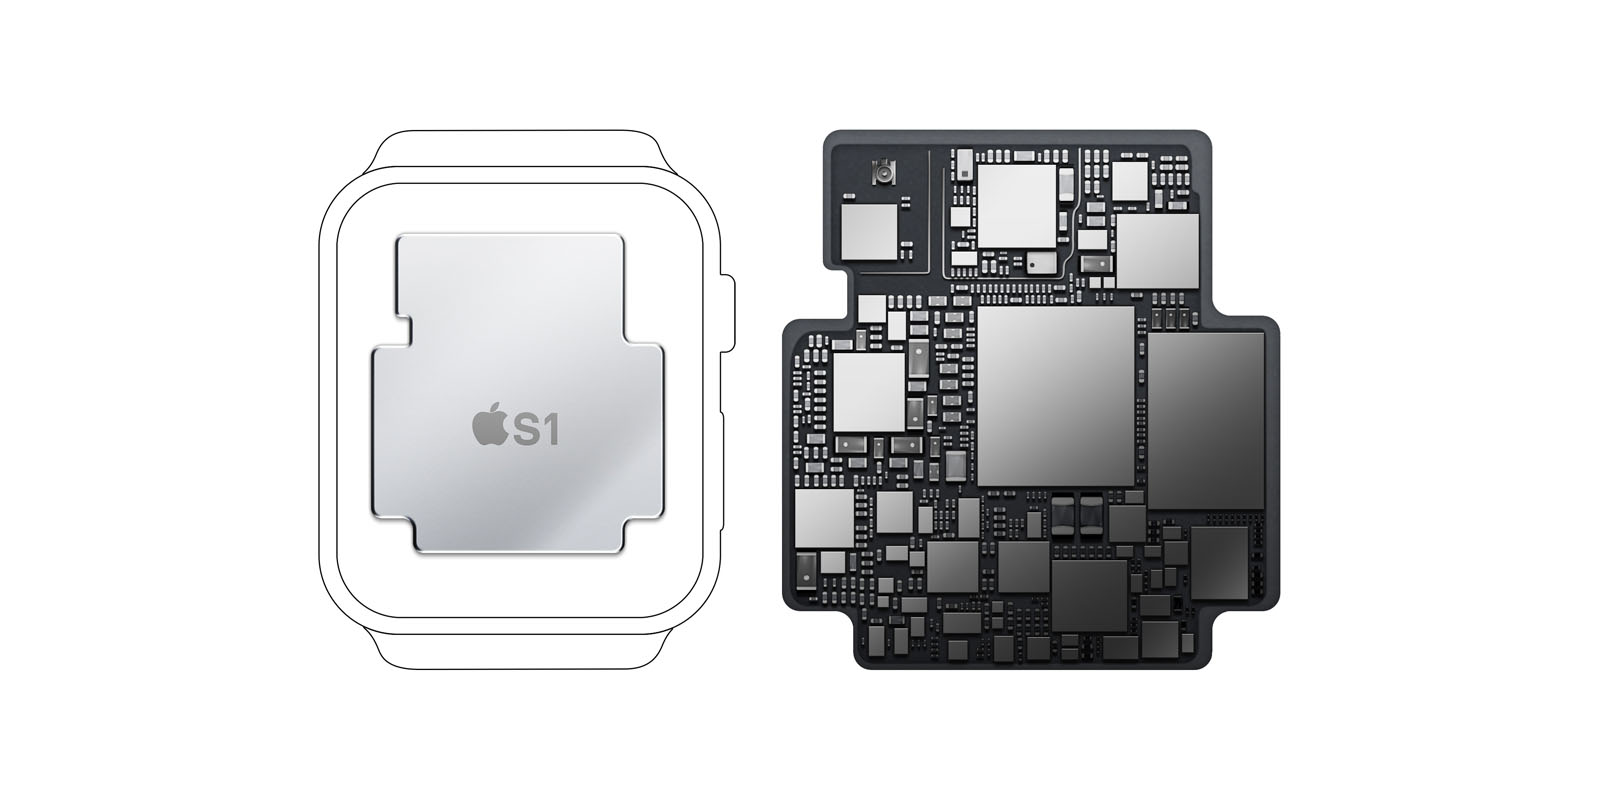 ｢Apple Watch｣の｢S1｣プロセッサ、RAMの容量は512MBである事が明らかに